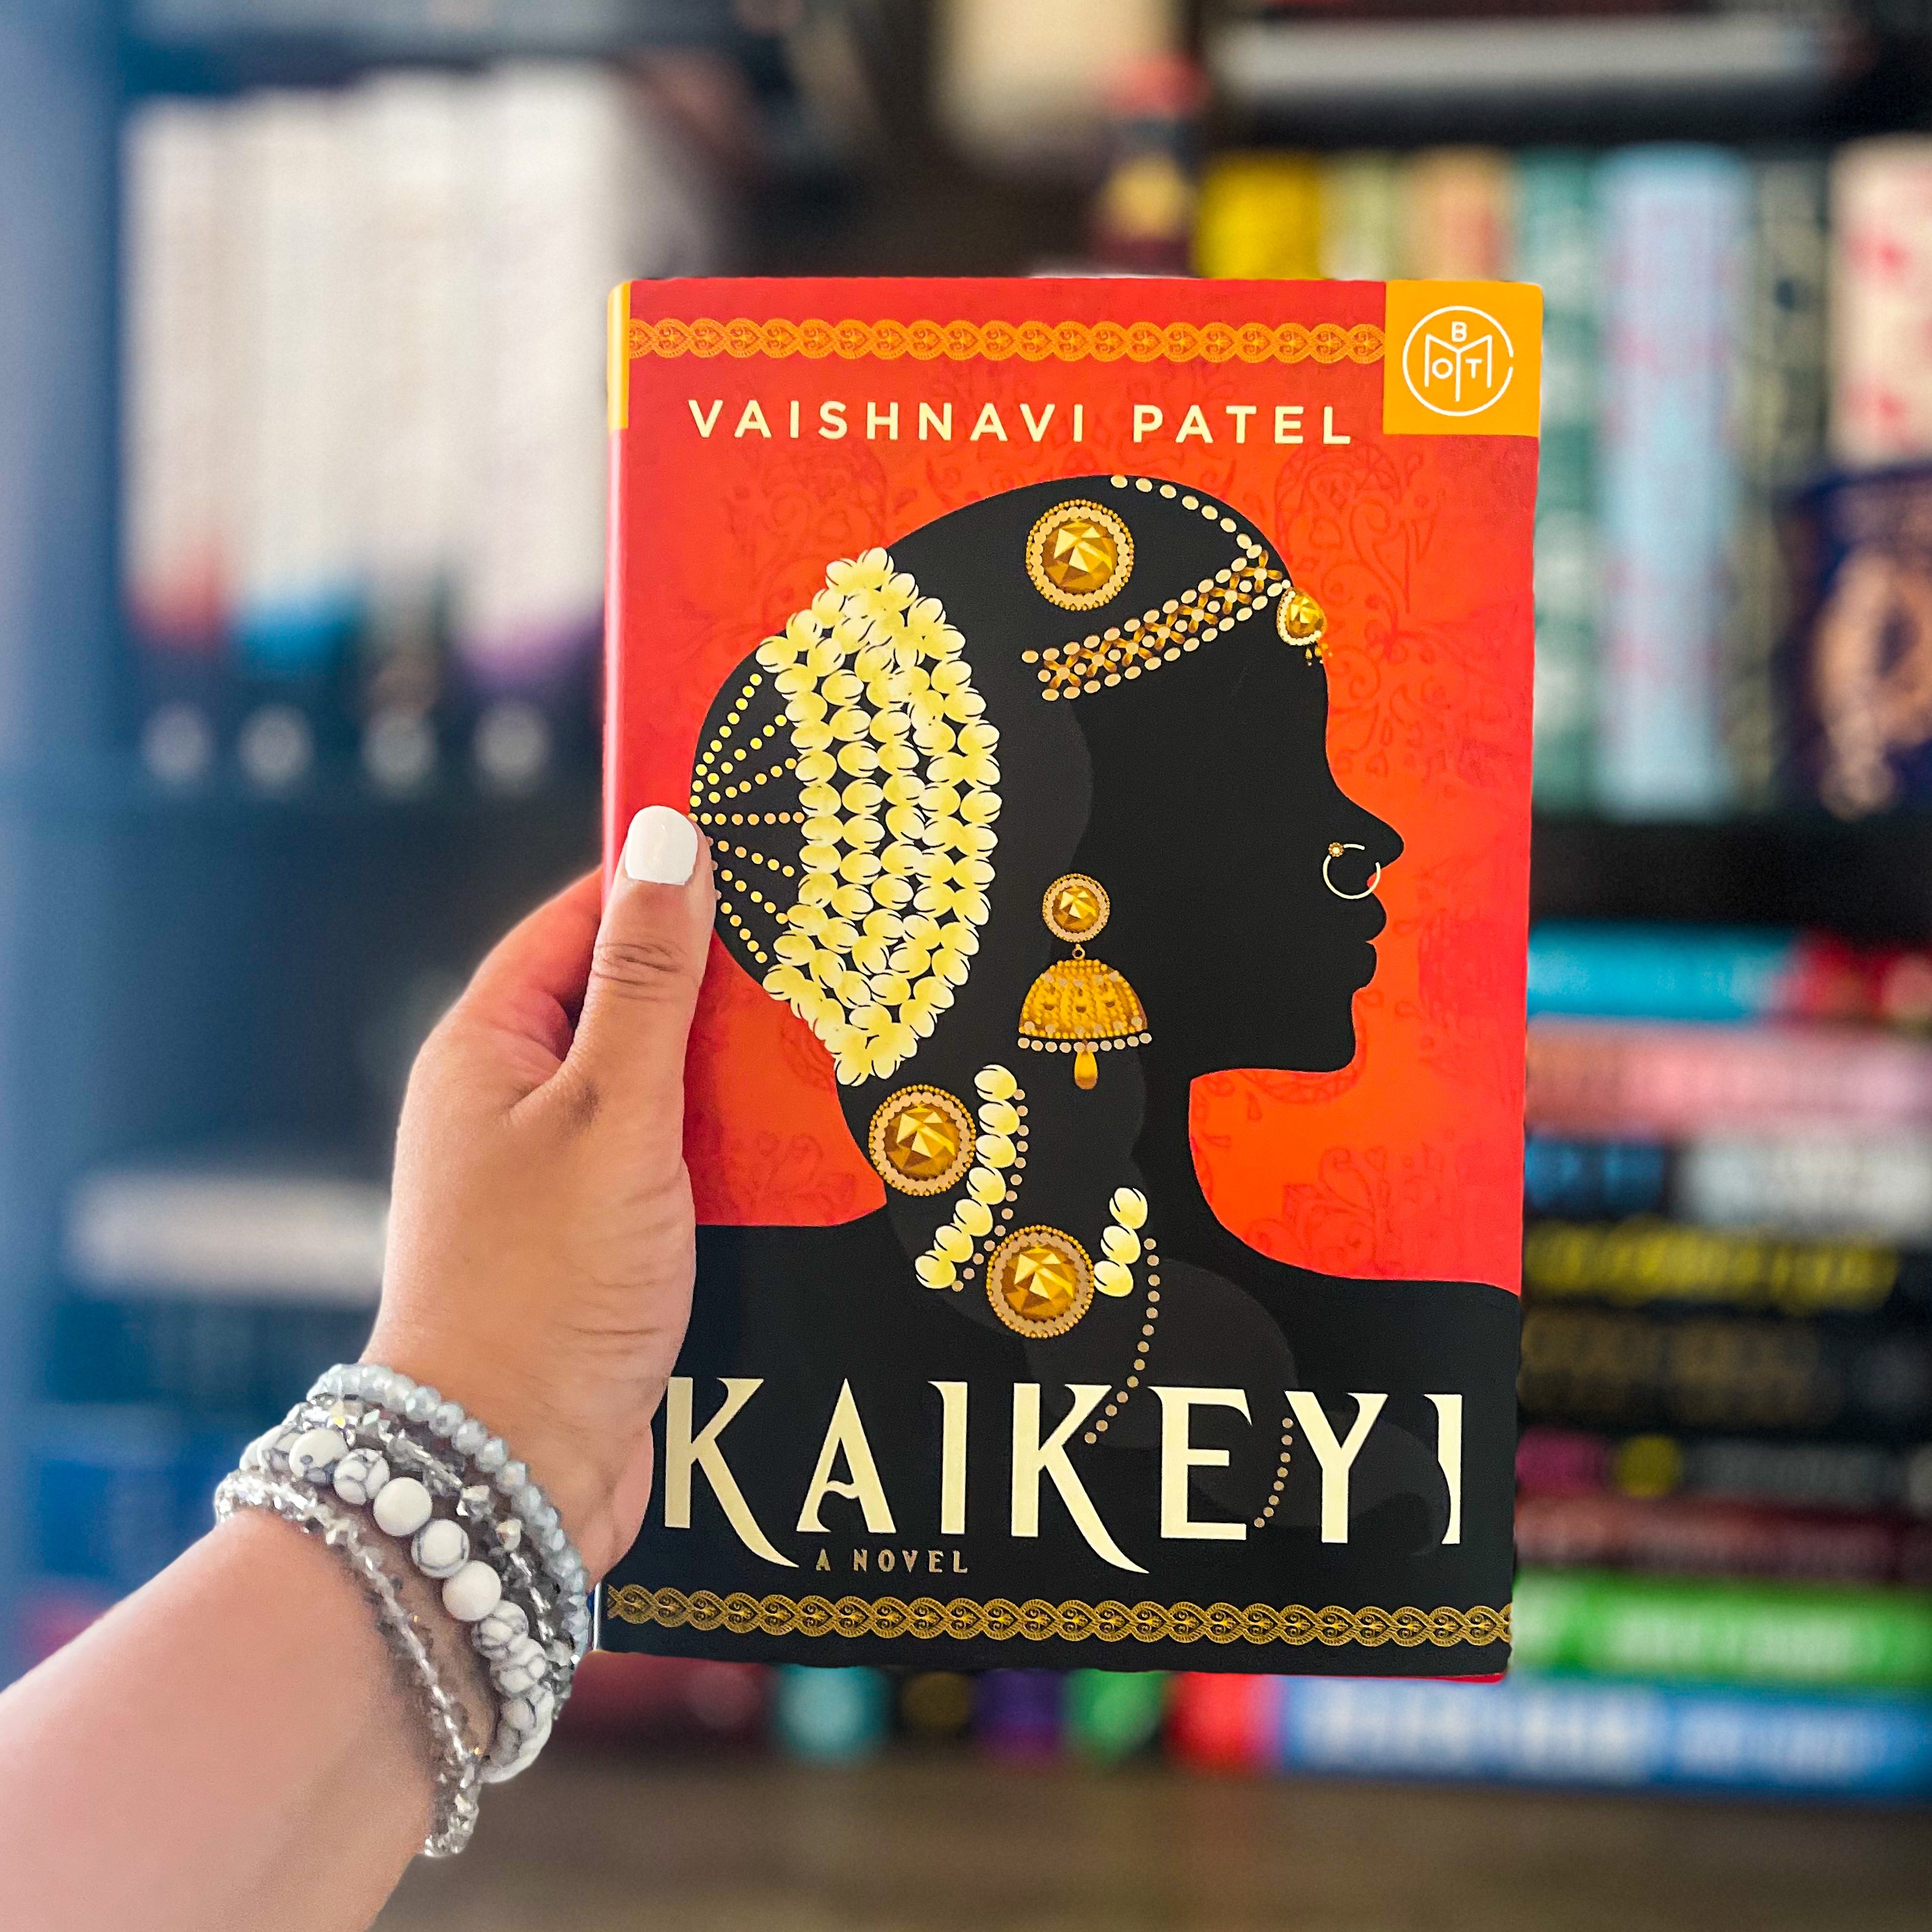 kaikeyi a novel book review